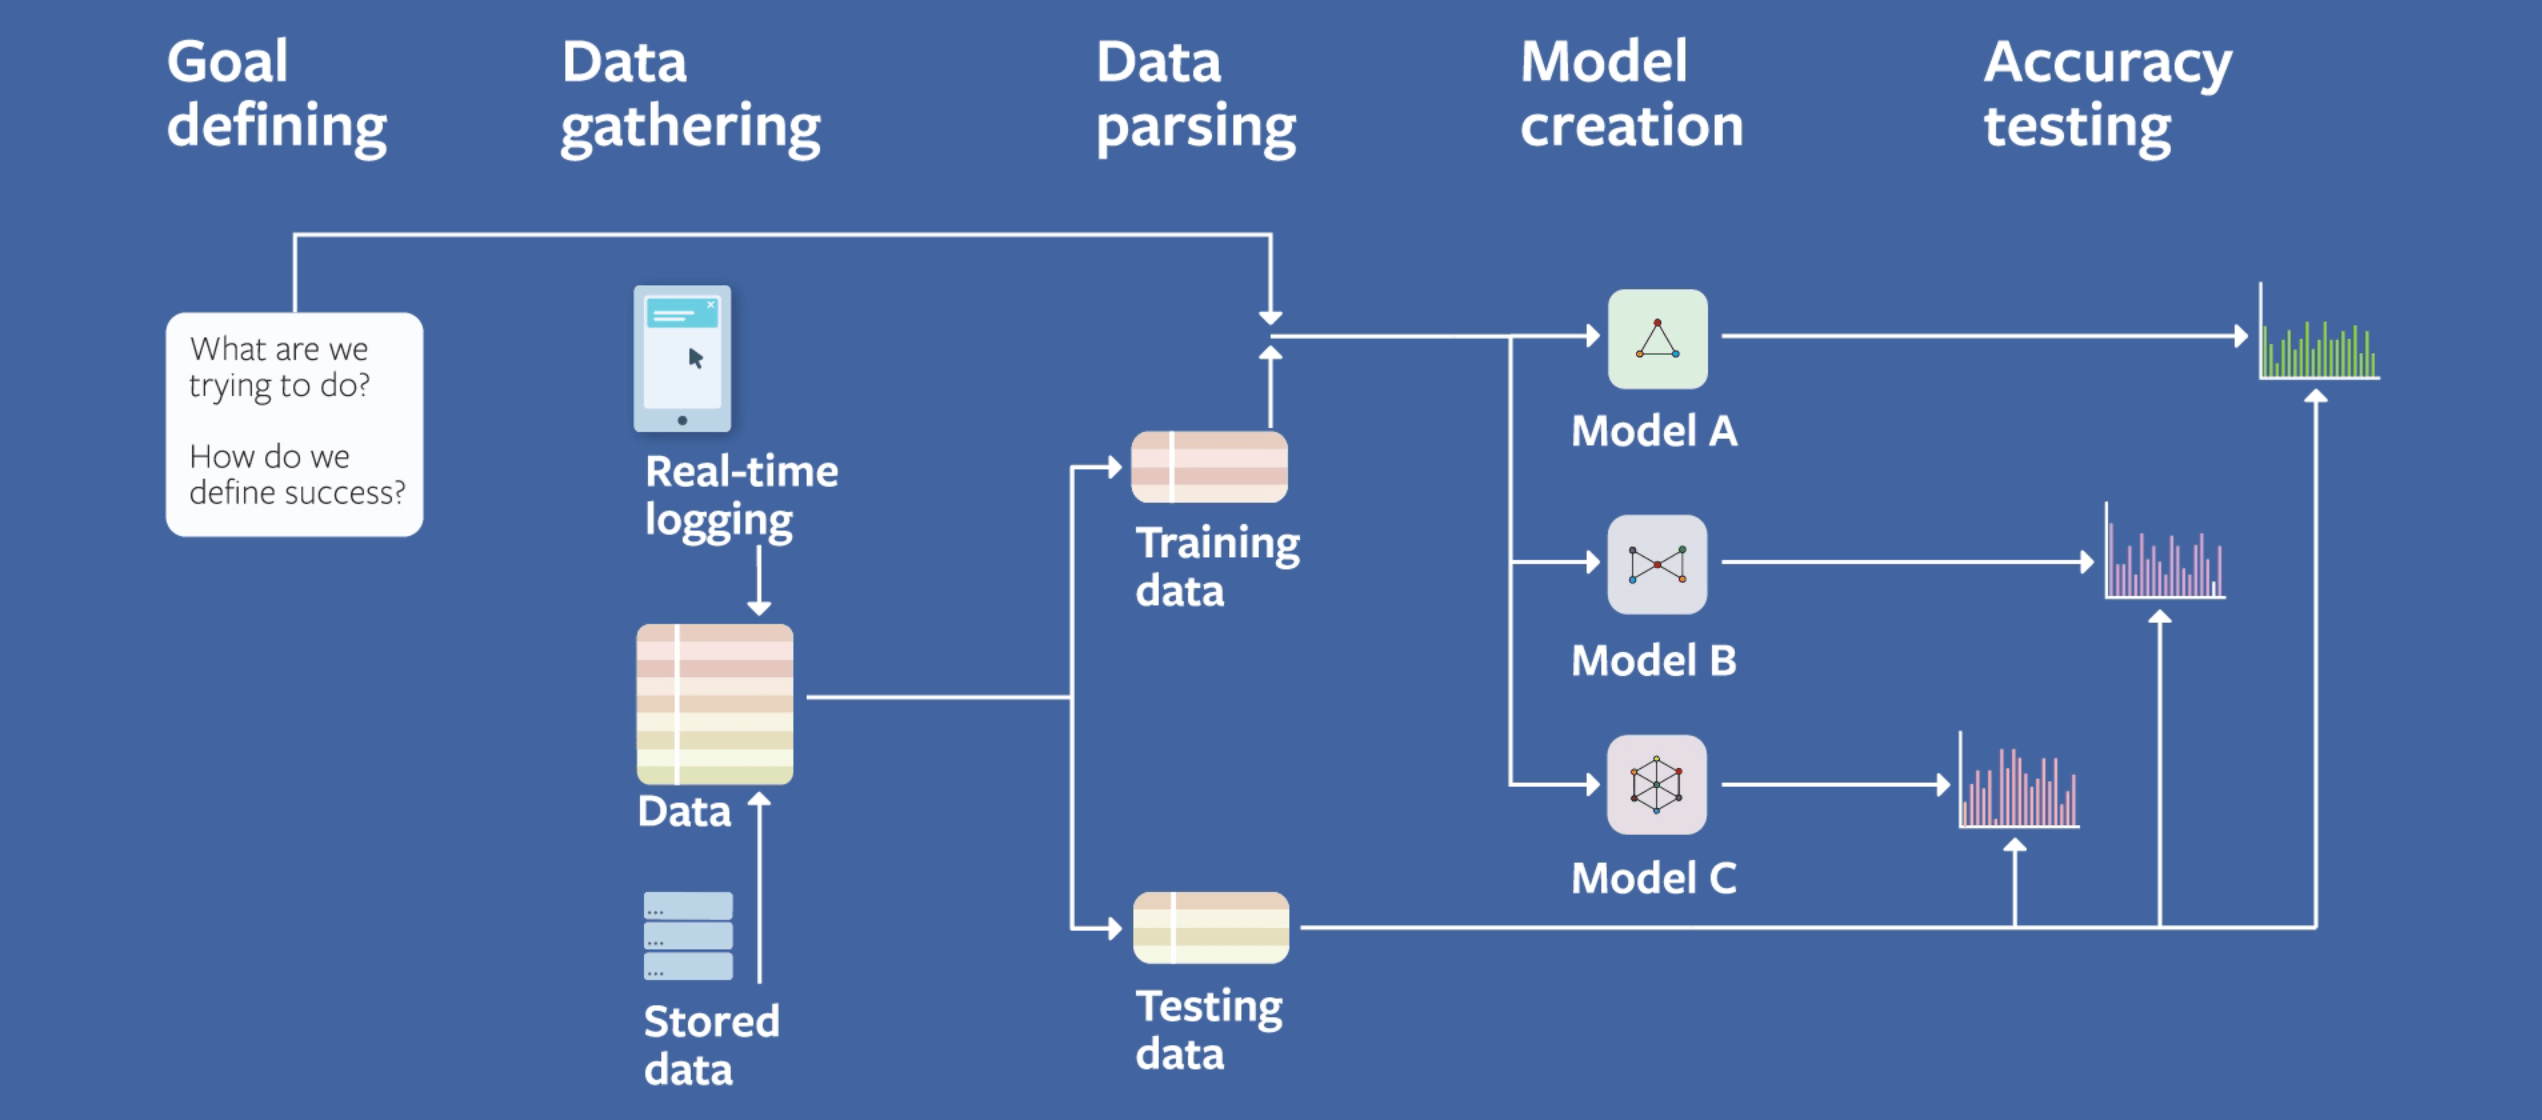 مدل یادگیری ماشینی در فیسبوک